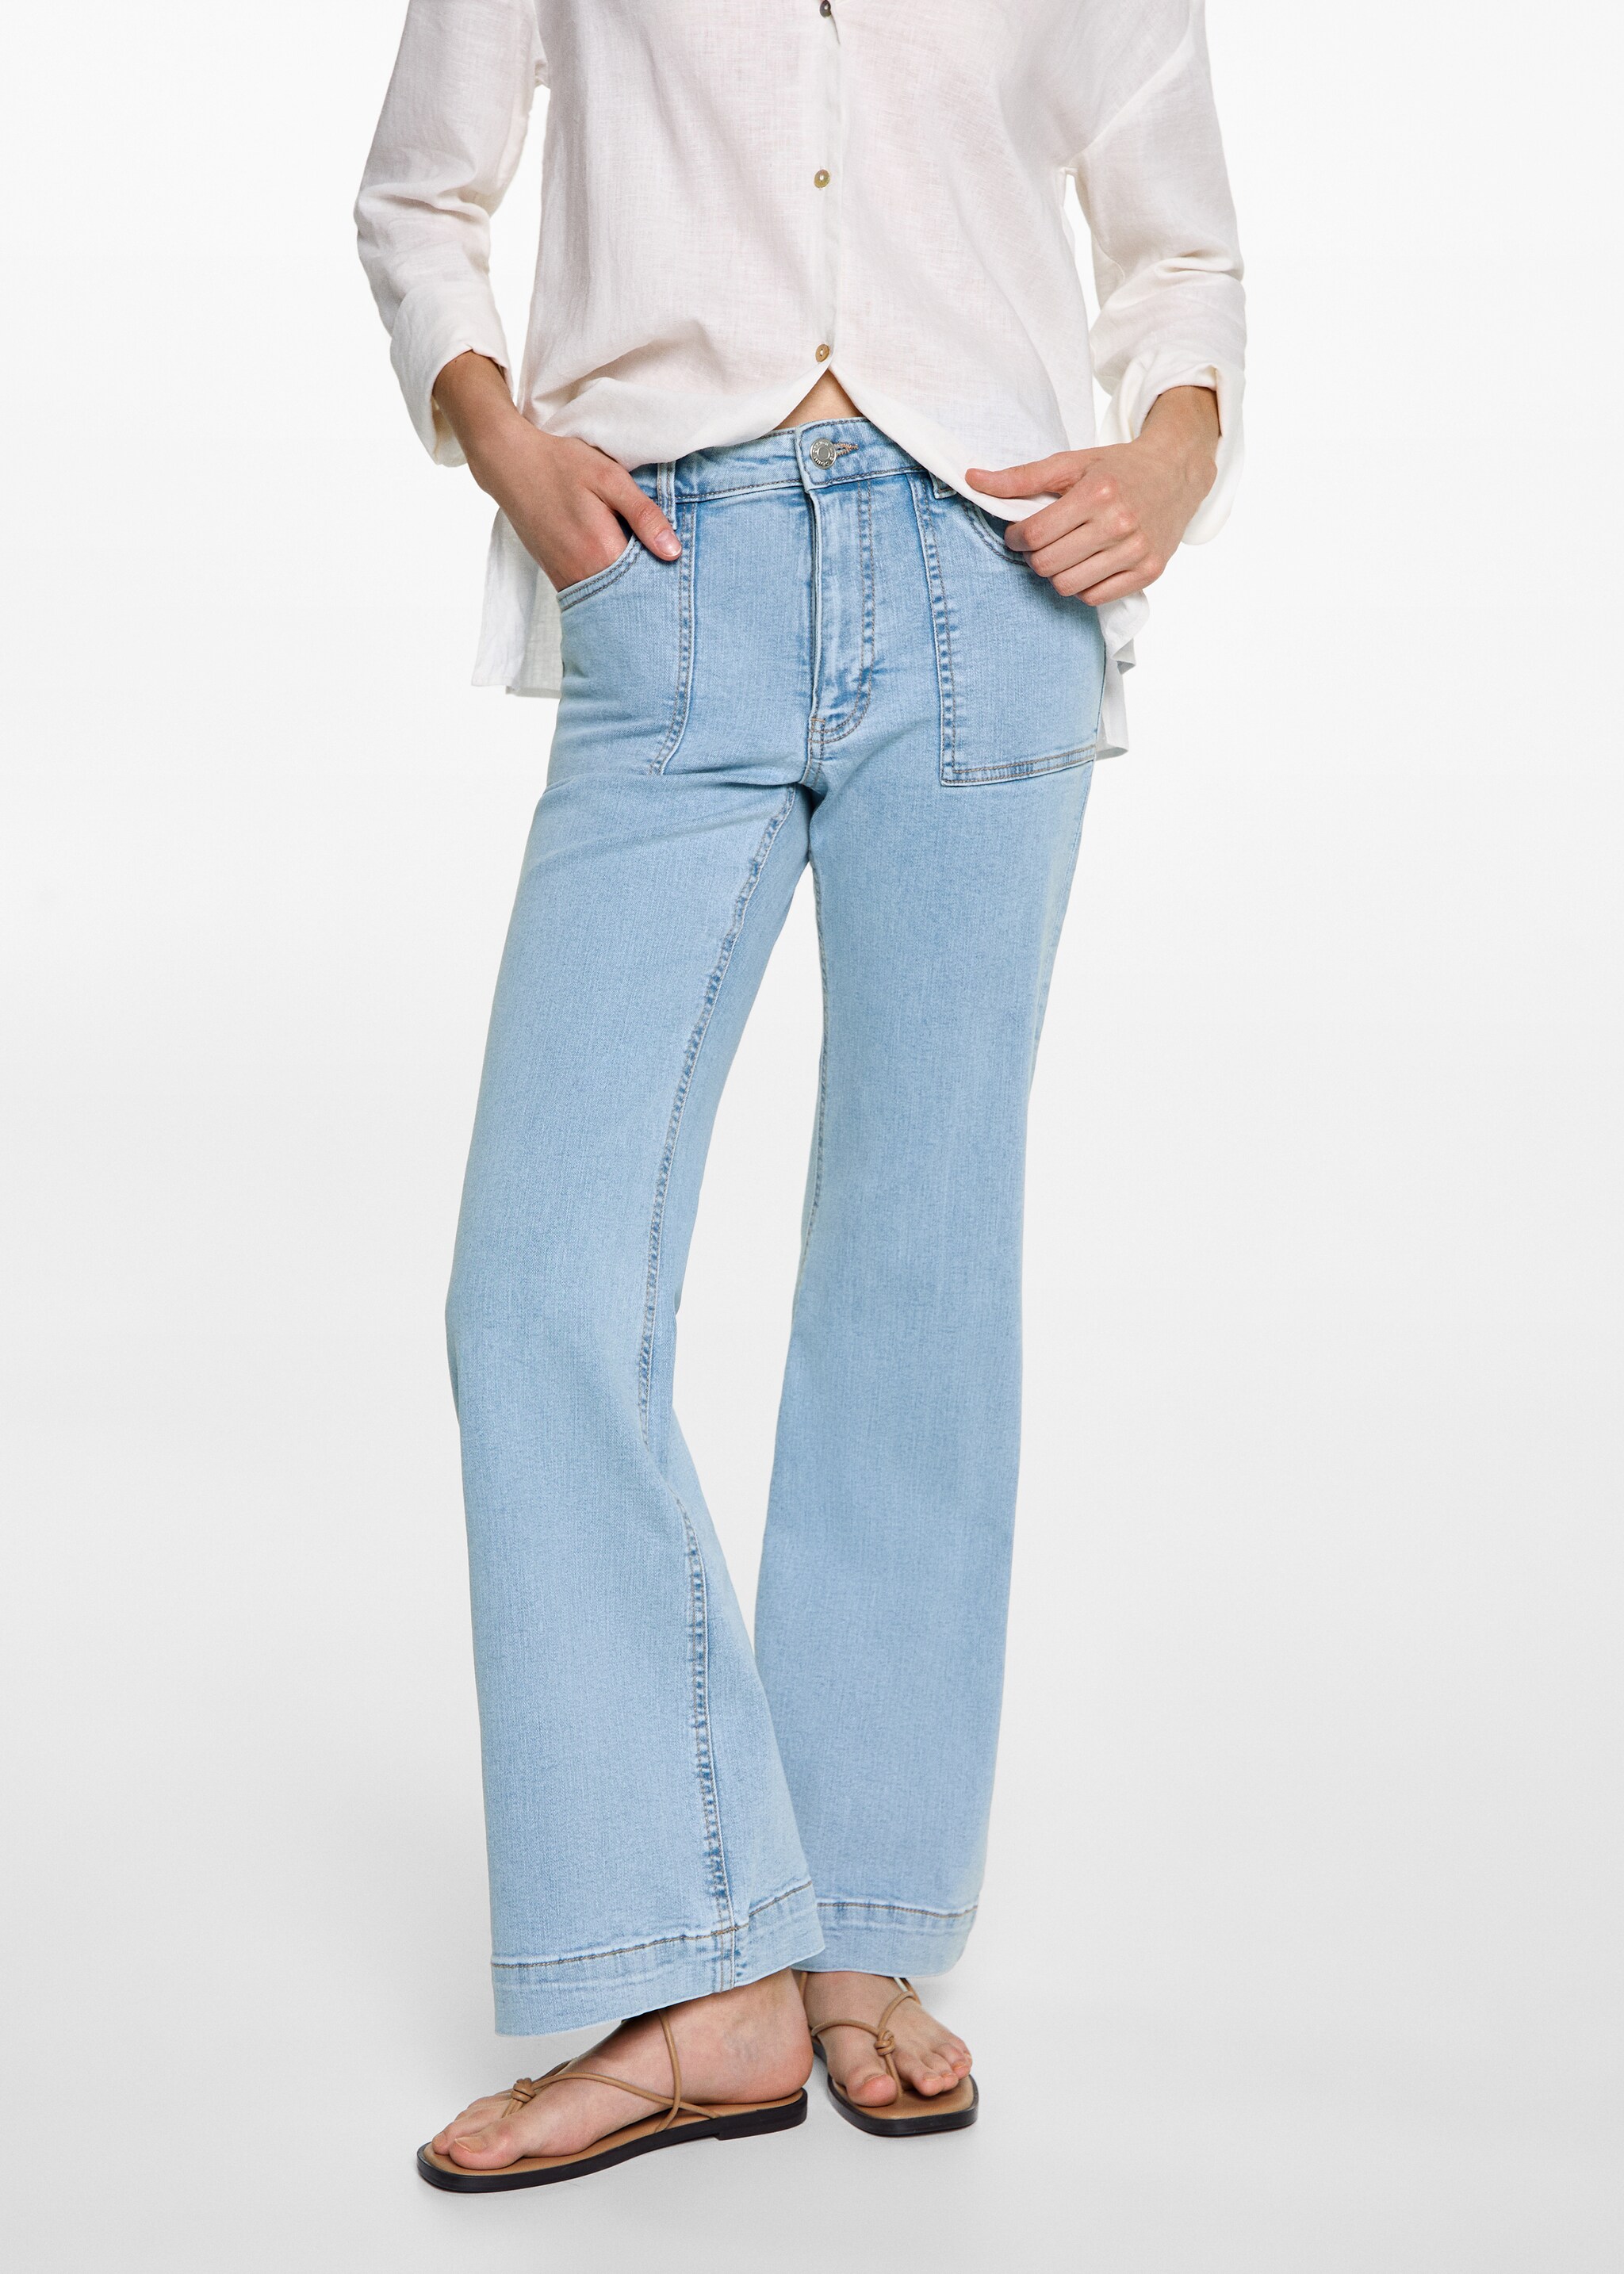 Jeans flare bolsillos - Plano medio